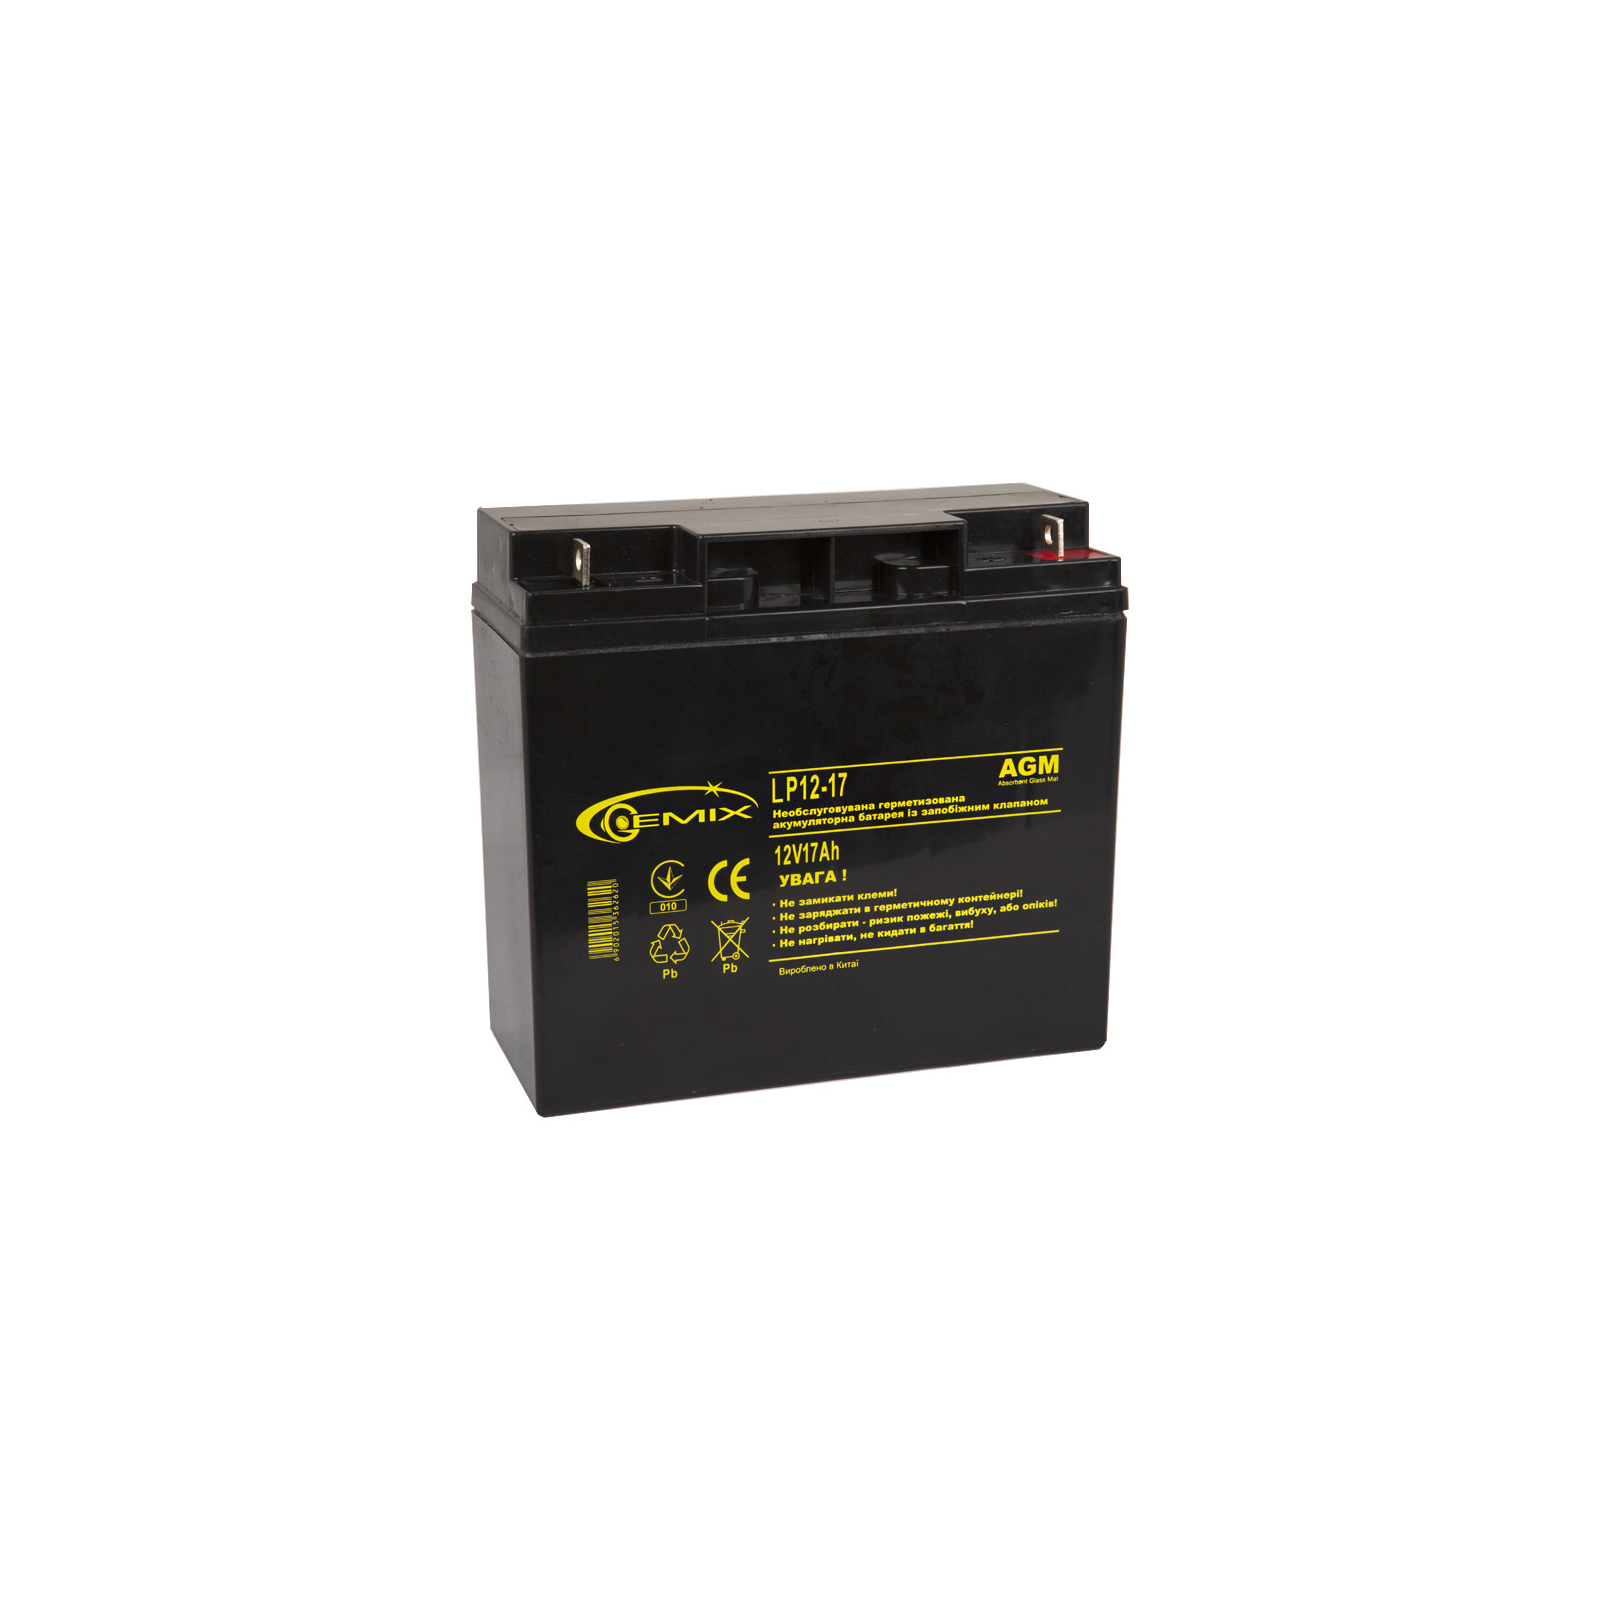 Батарея к ИБП Gemix 12В 17 Ач (LP12-17)